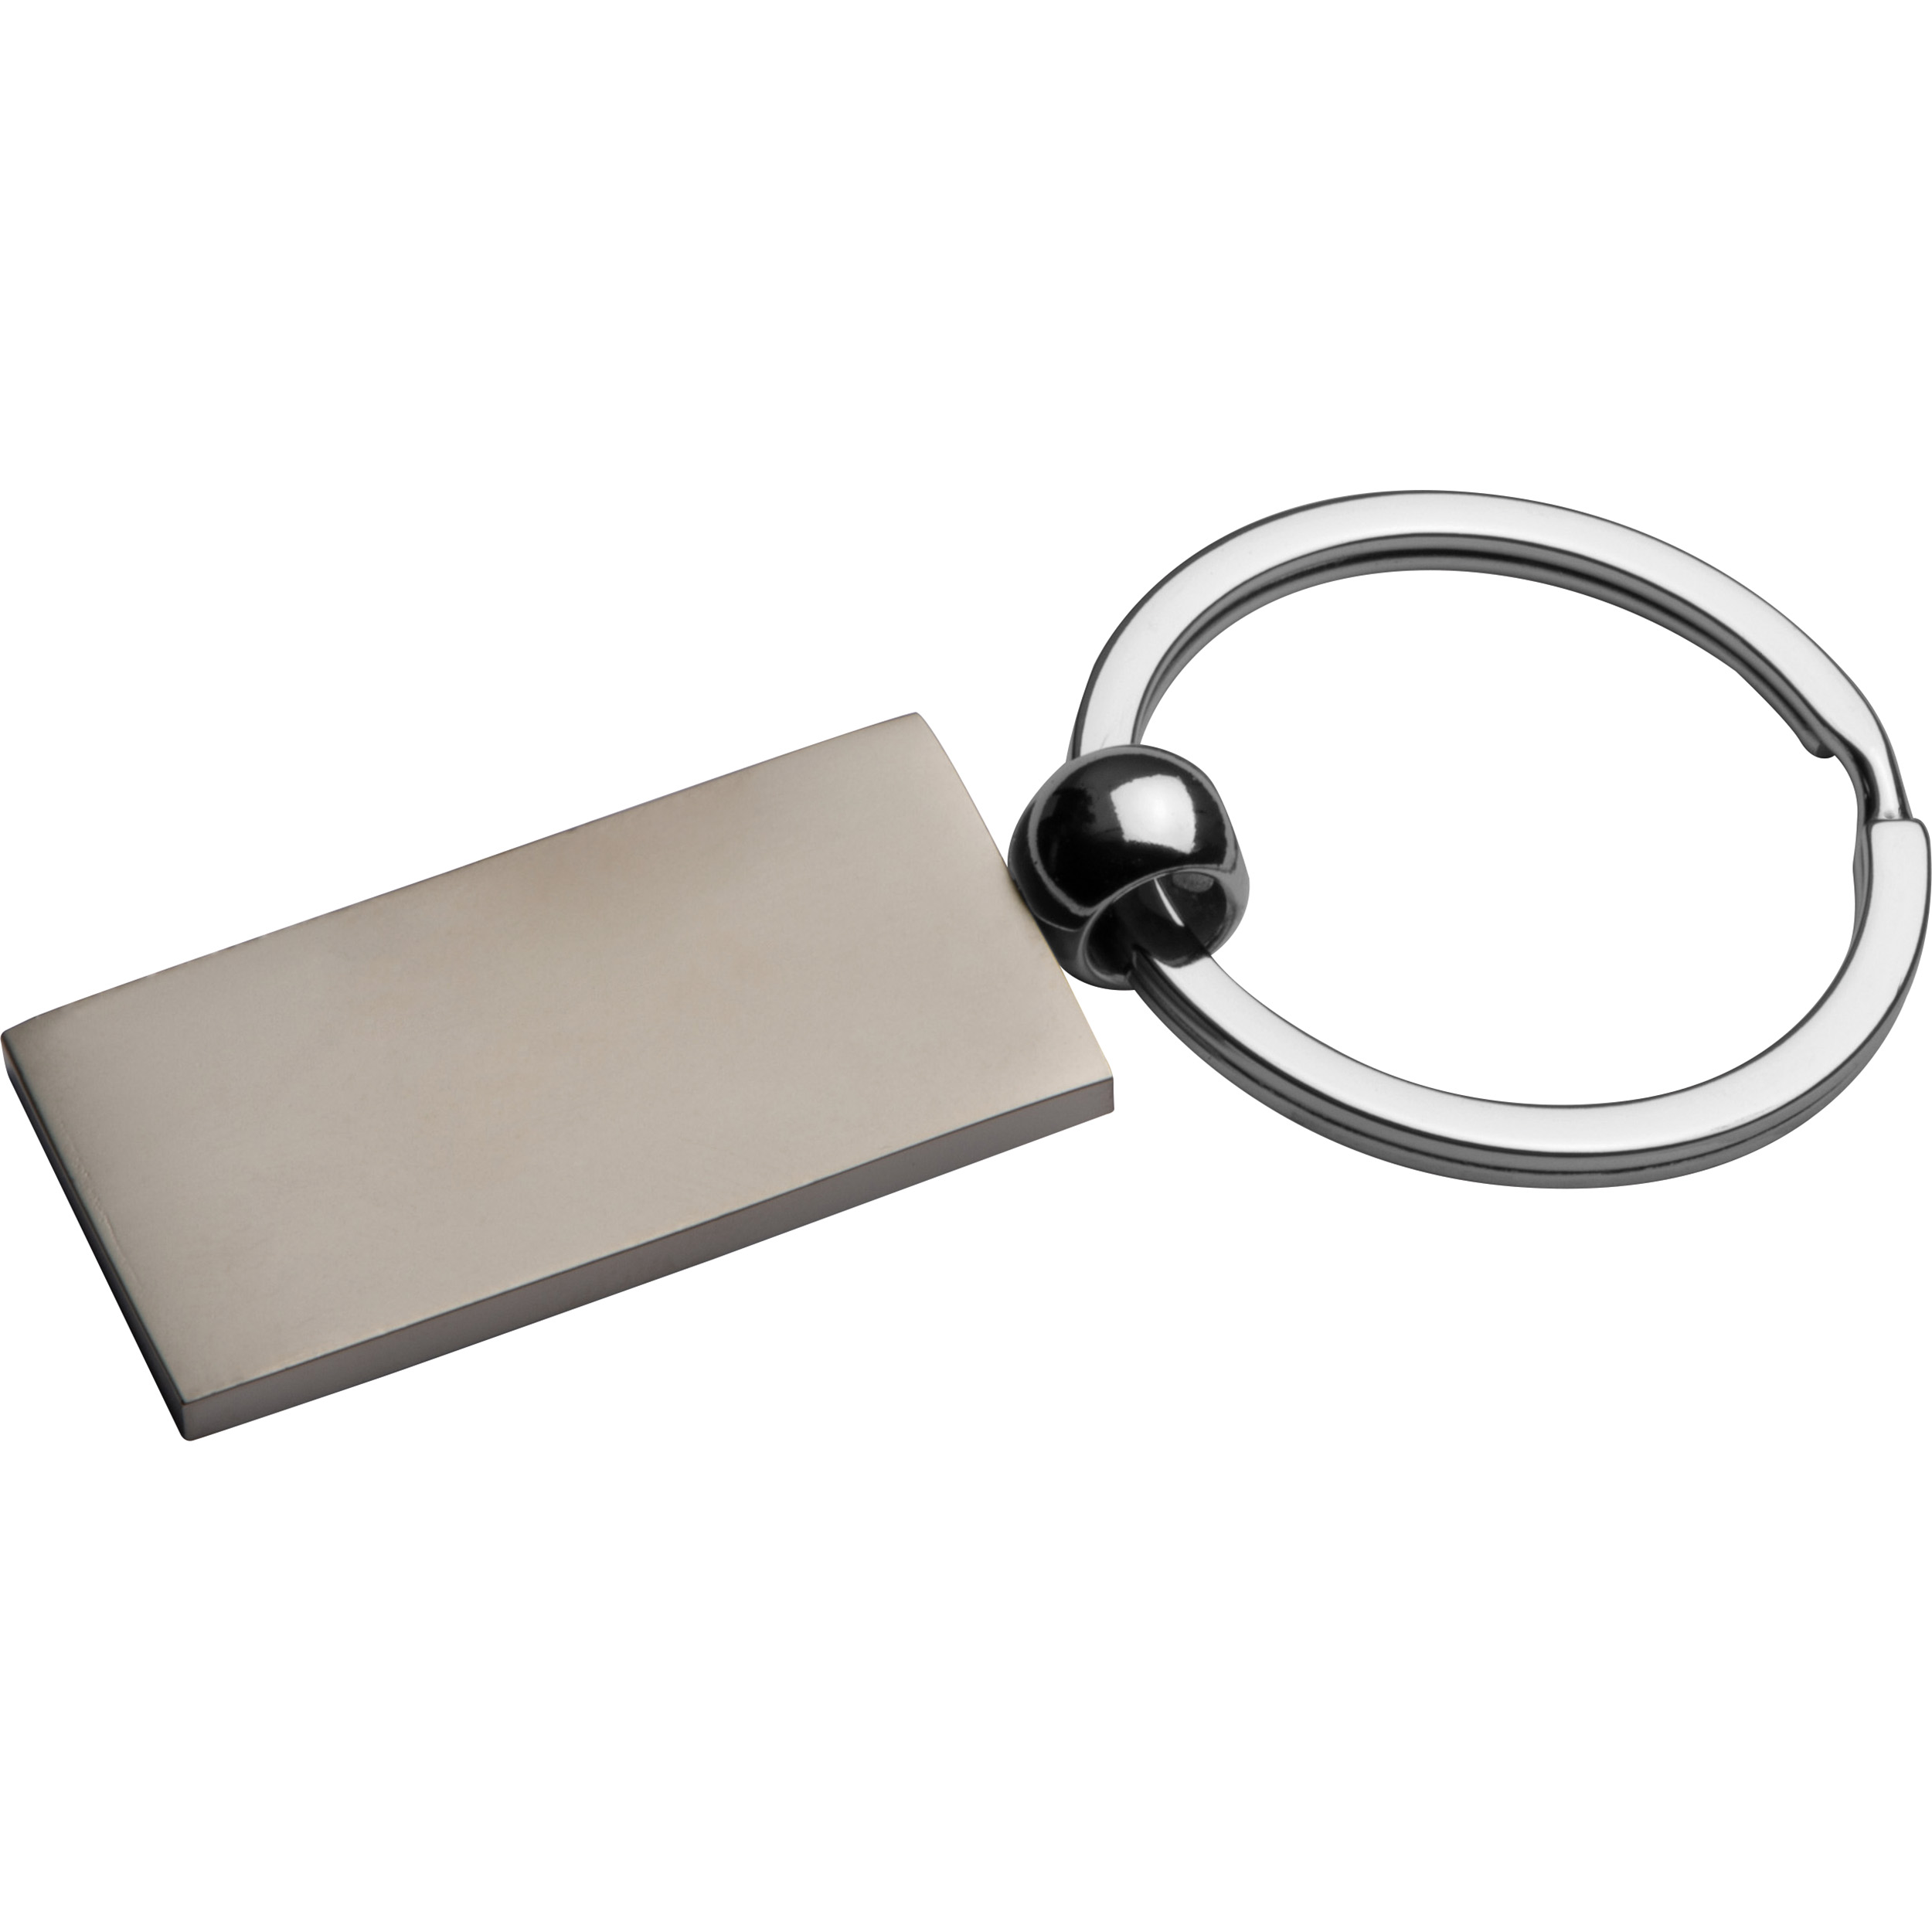 Metall-Schlüsselanhänger, rechteckig